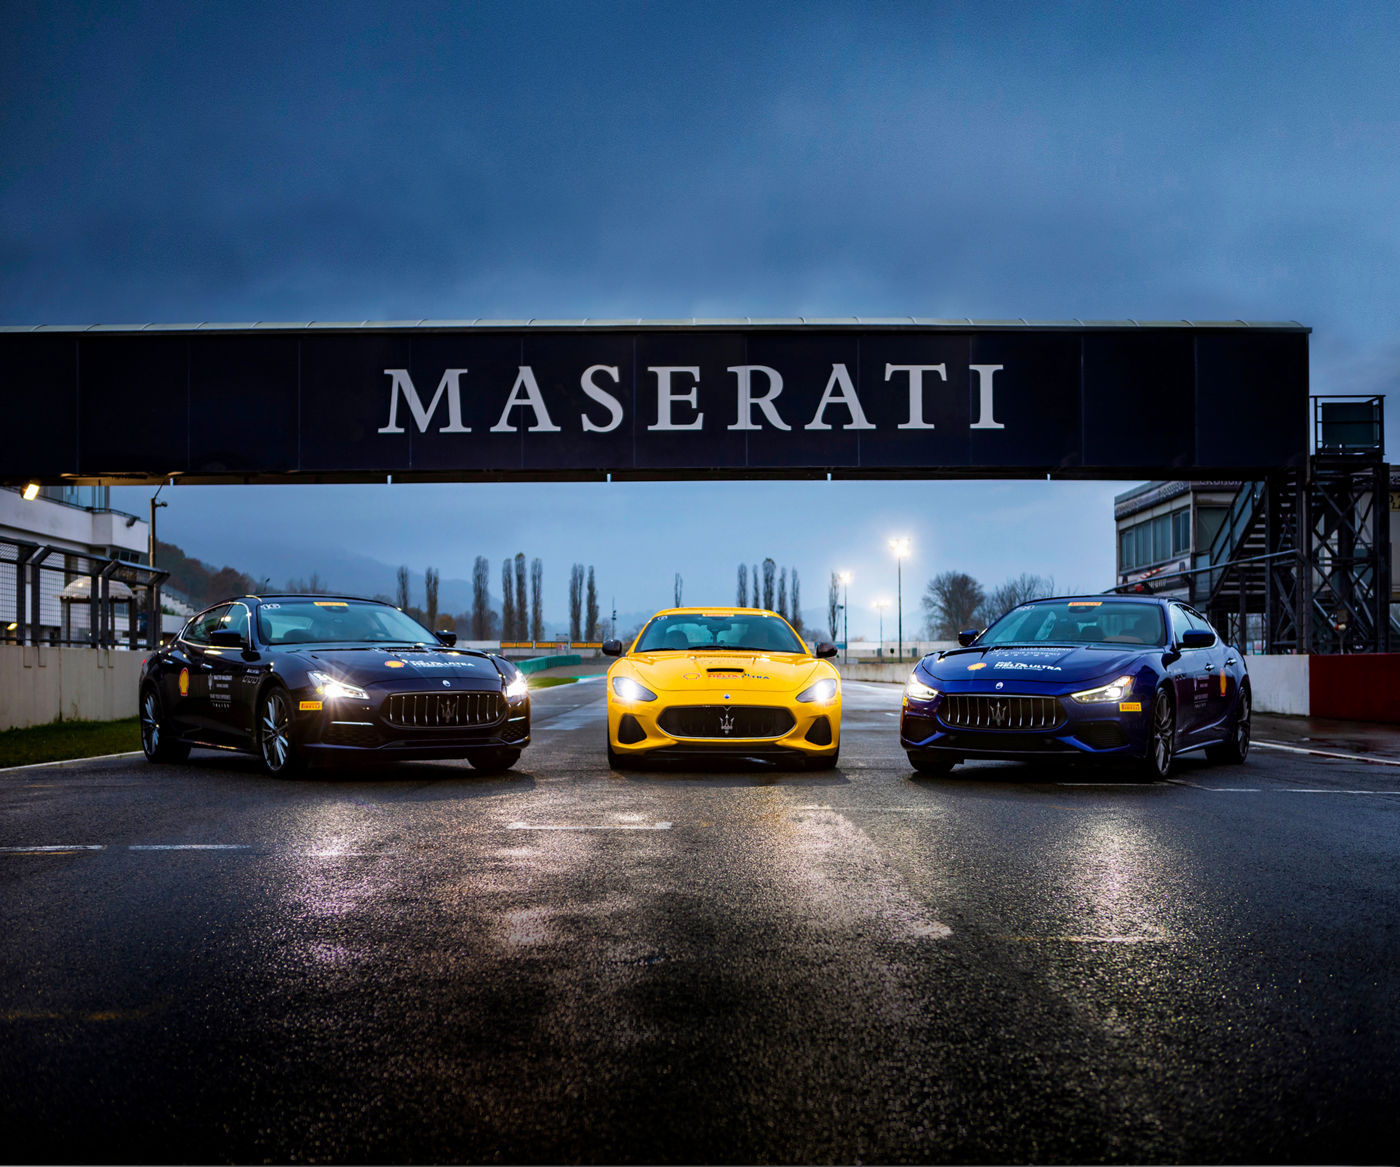 3 modelos de Maserati en un circuito